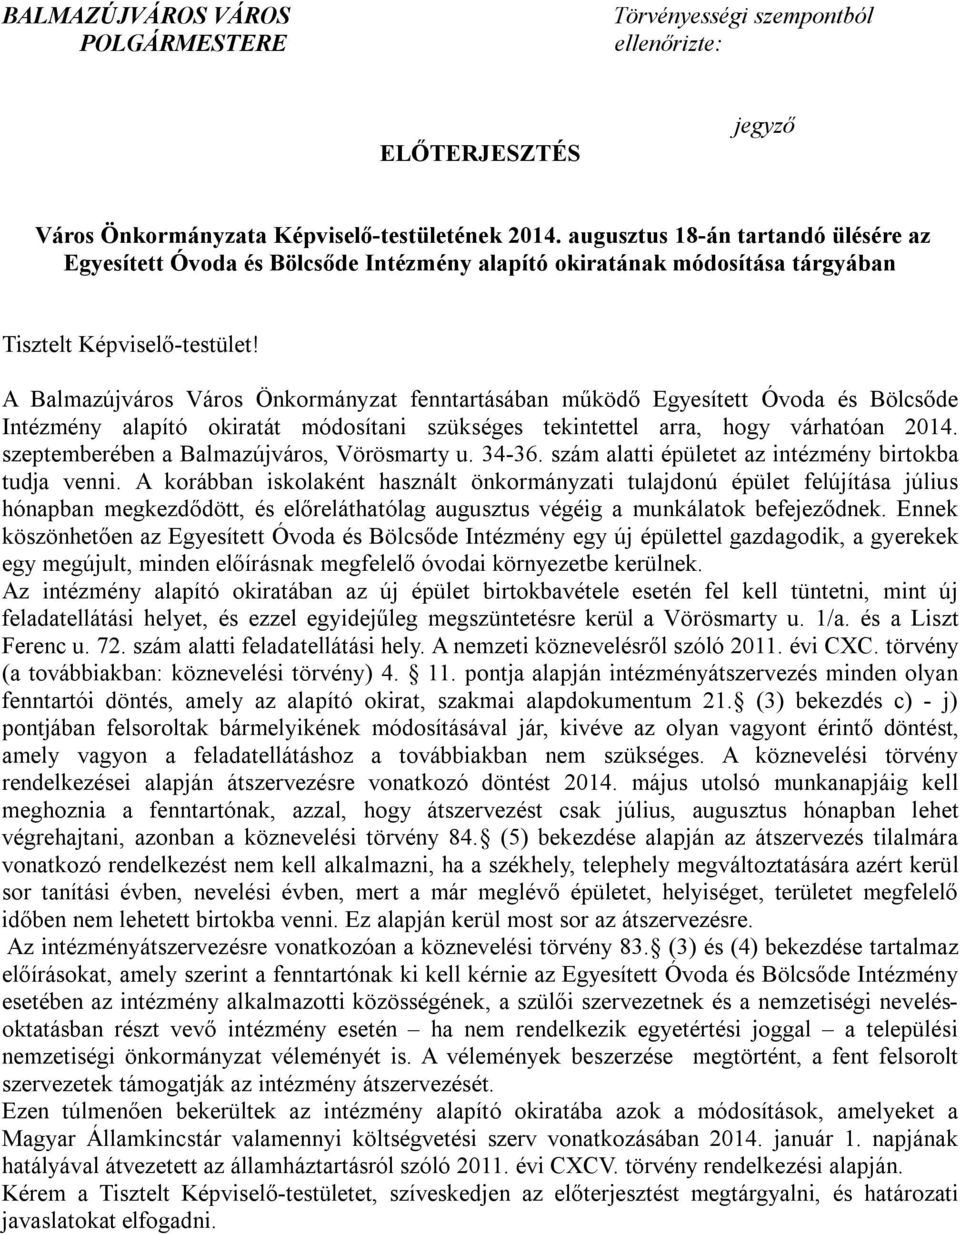 A Balmazújváros Város Önkormányzat fenntartásában működő Egyesített Óvoda és Bölcsőde Intézmény alapító okiratát módosítani szükséges tekintettel arra, hogy várhatóan 2014.